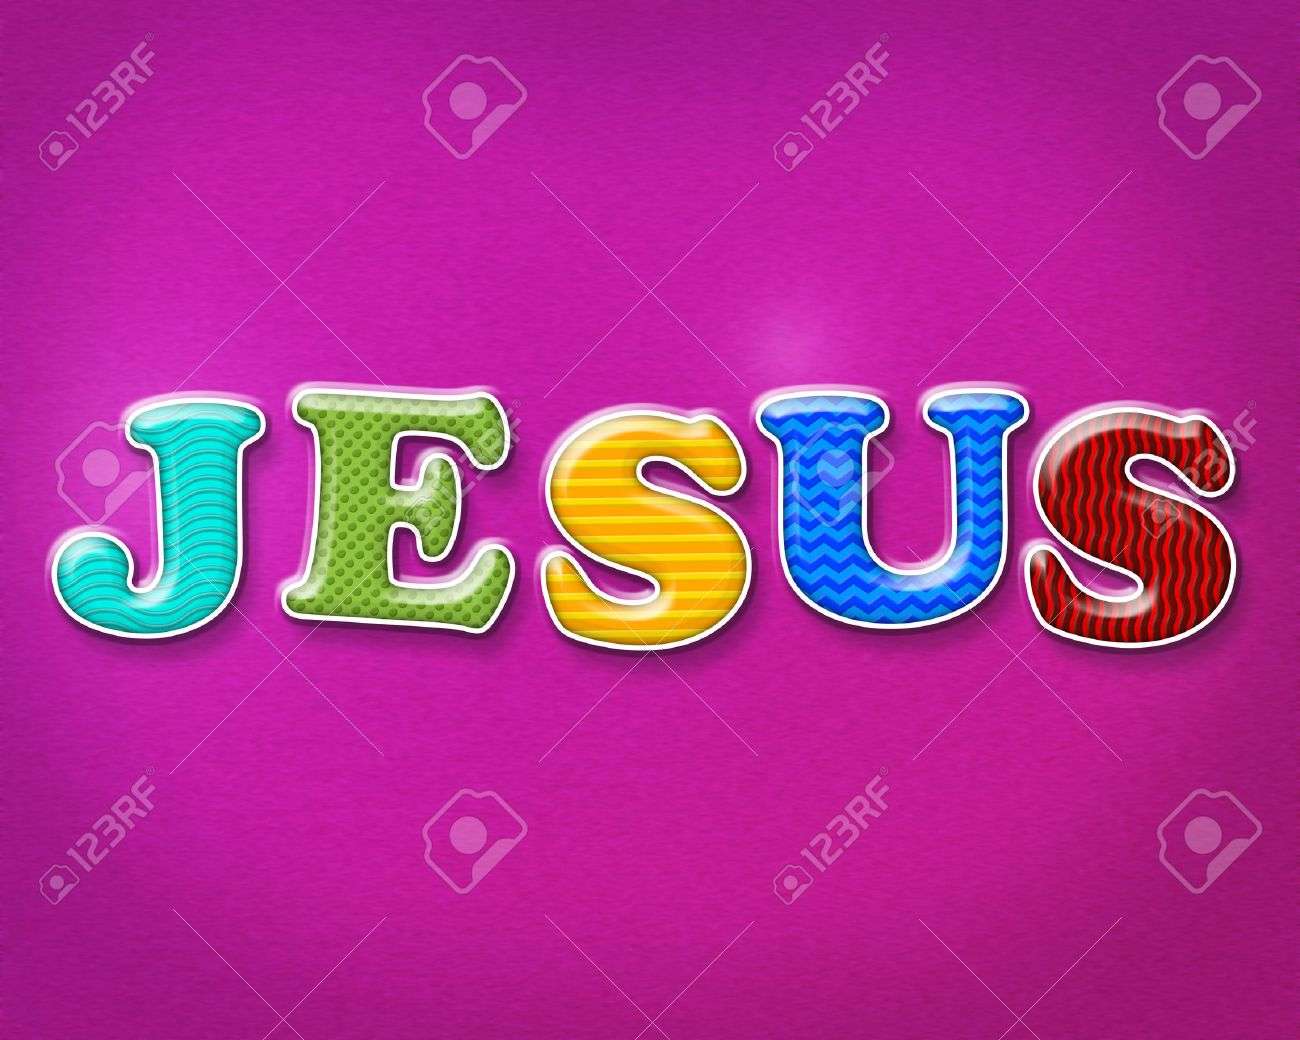 Jesus filho de Deus quebra-cabeças online